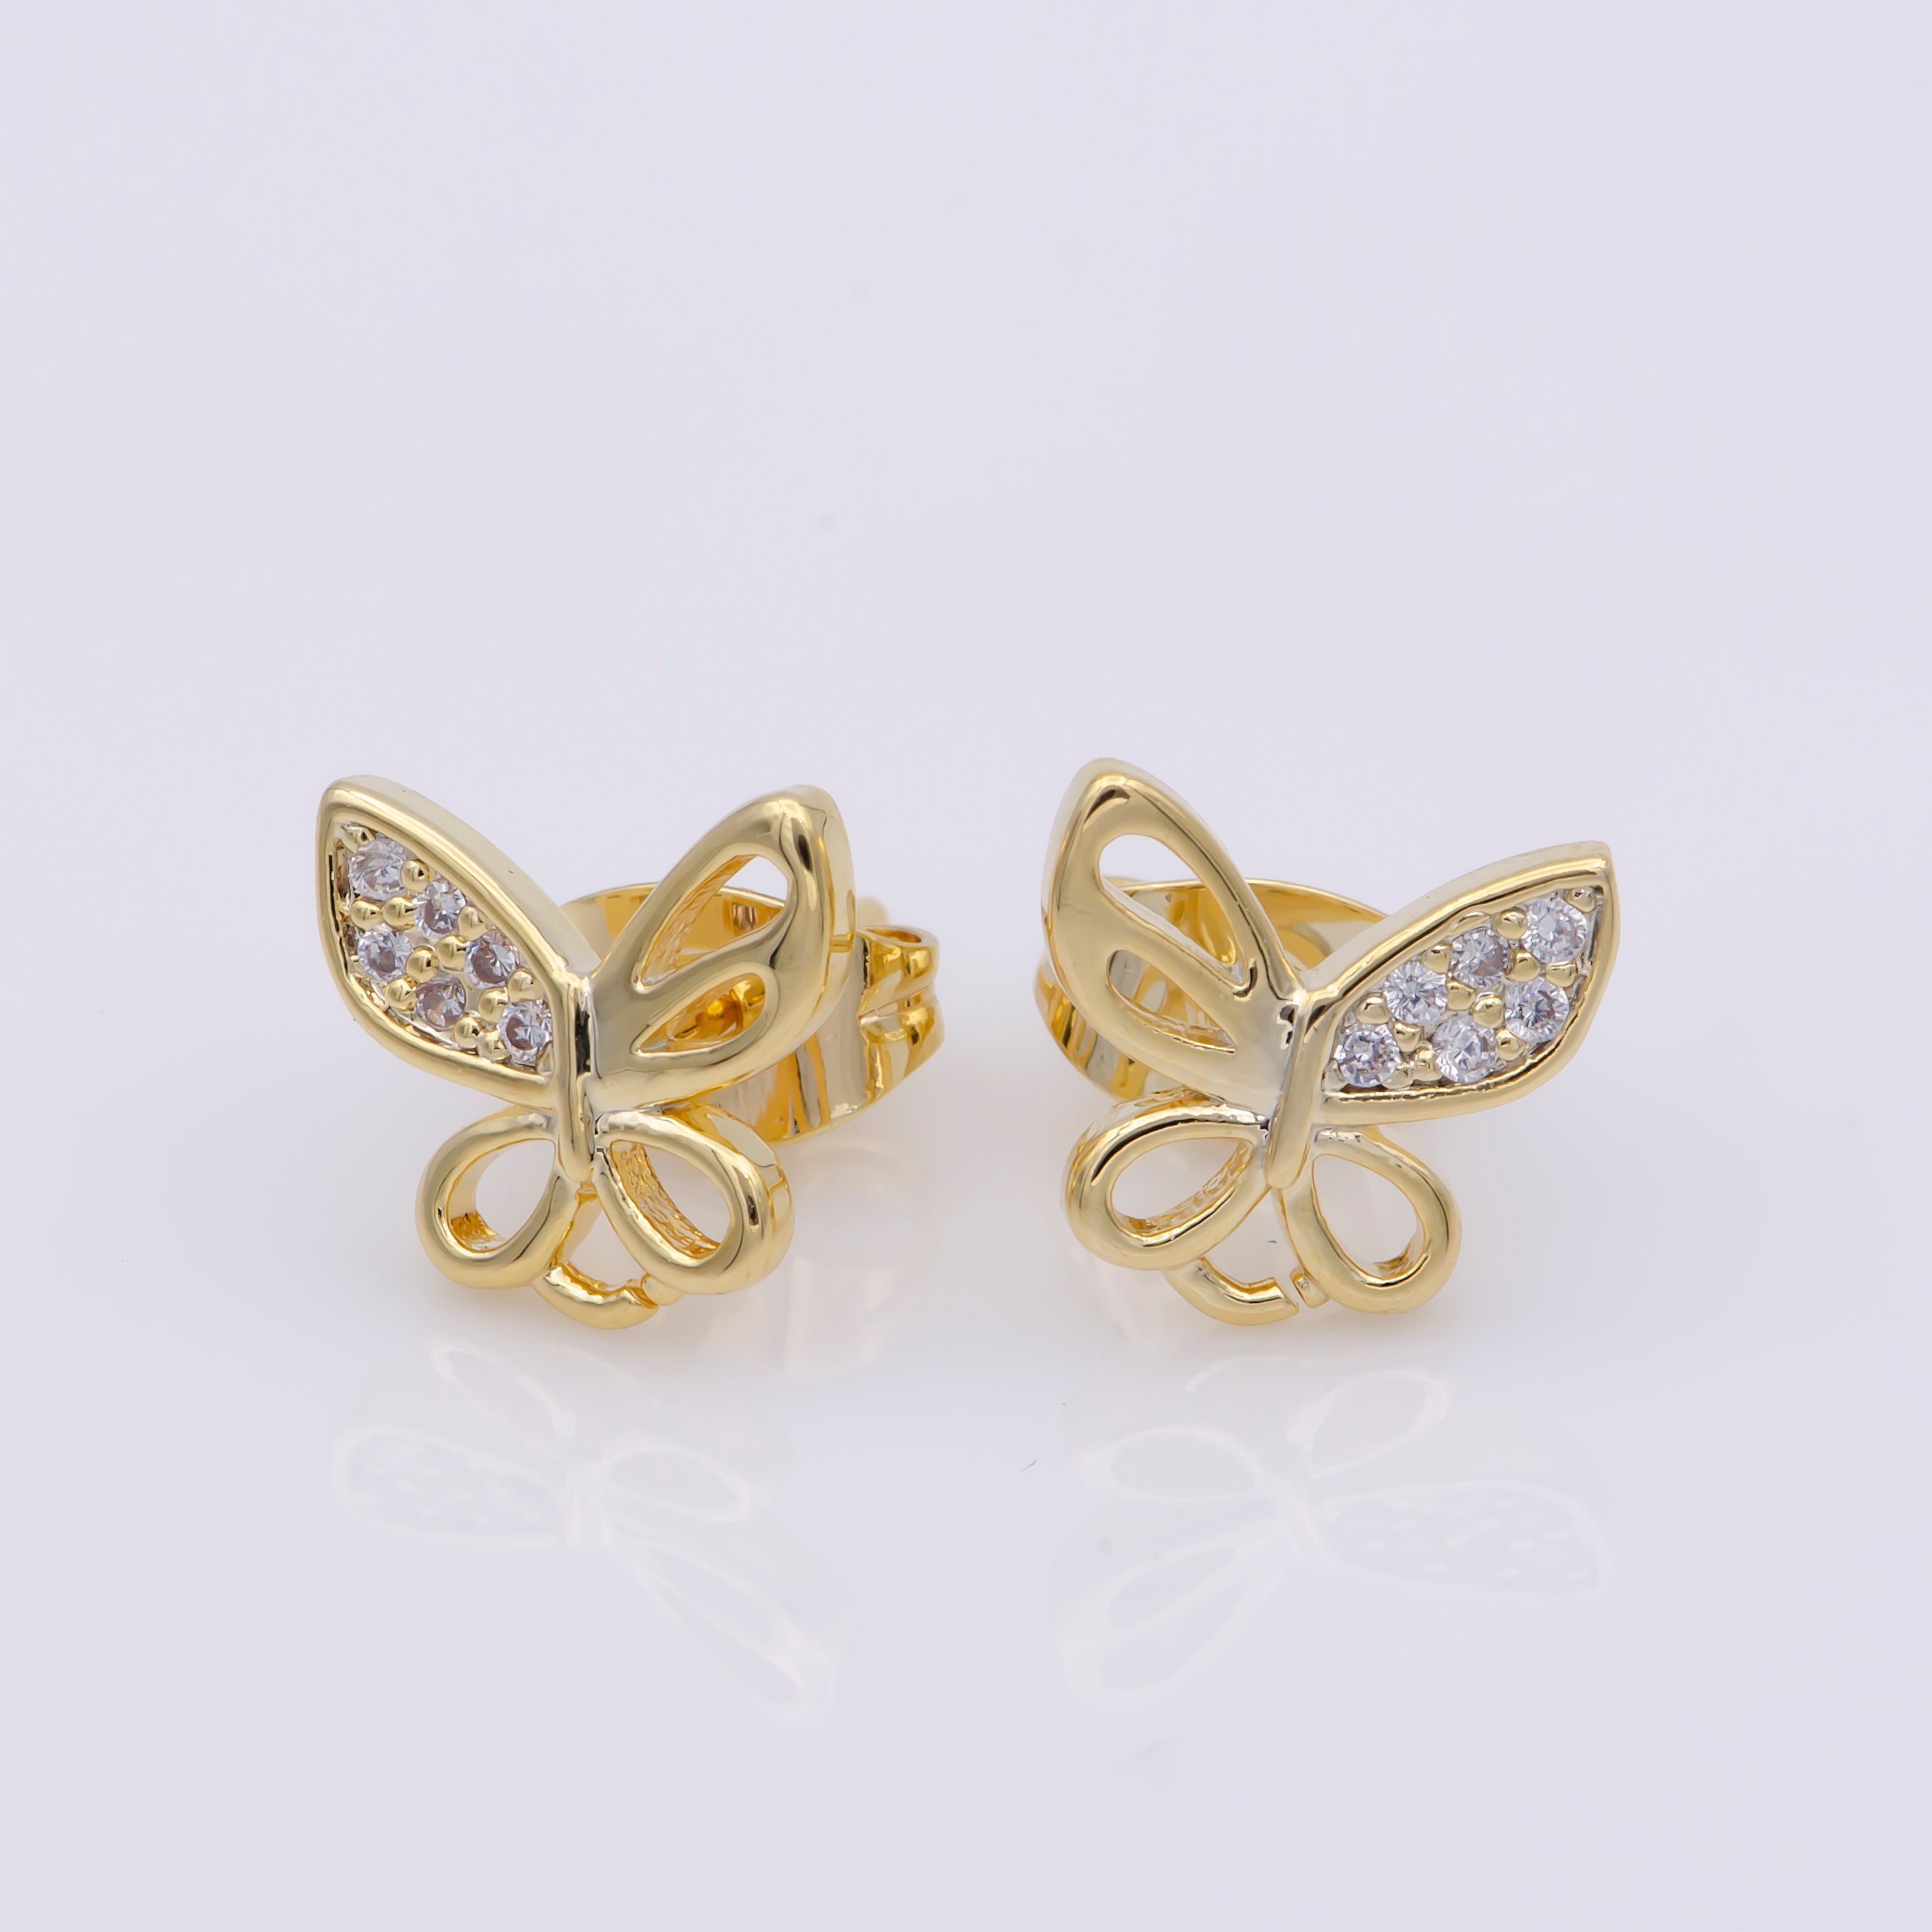 24k Vermeil Gold Earrings, Stud Earring, Butterfly Earring, Gift for Her, Earrings for Women, Everyday Wear Earrings, Cubic Zirconia Jewel, 2XSUPP-747/K-747 - DLUXCA